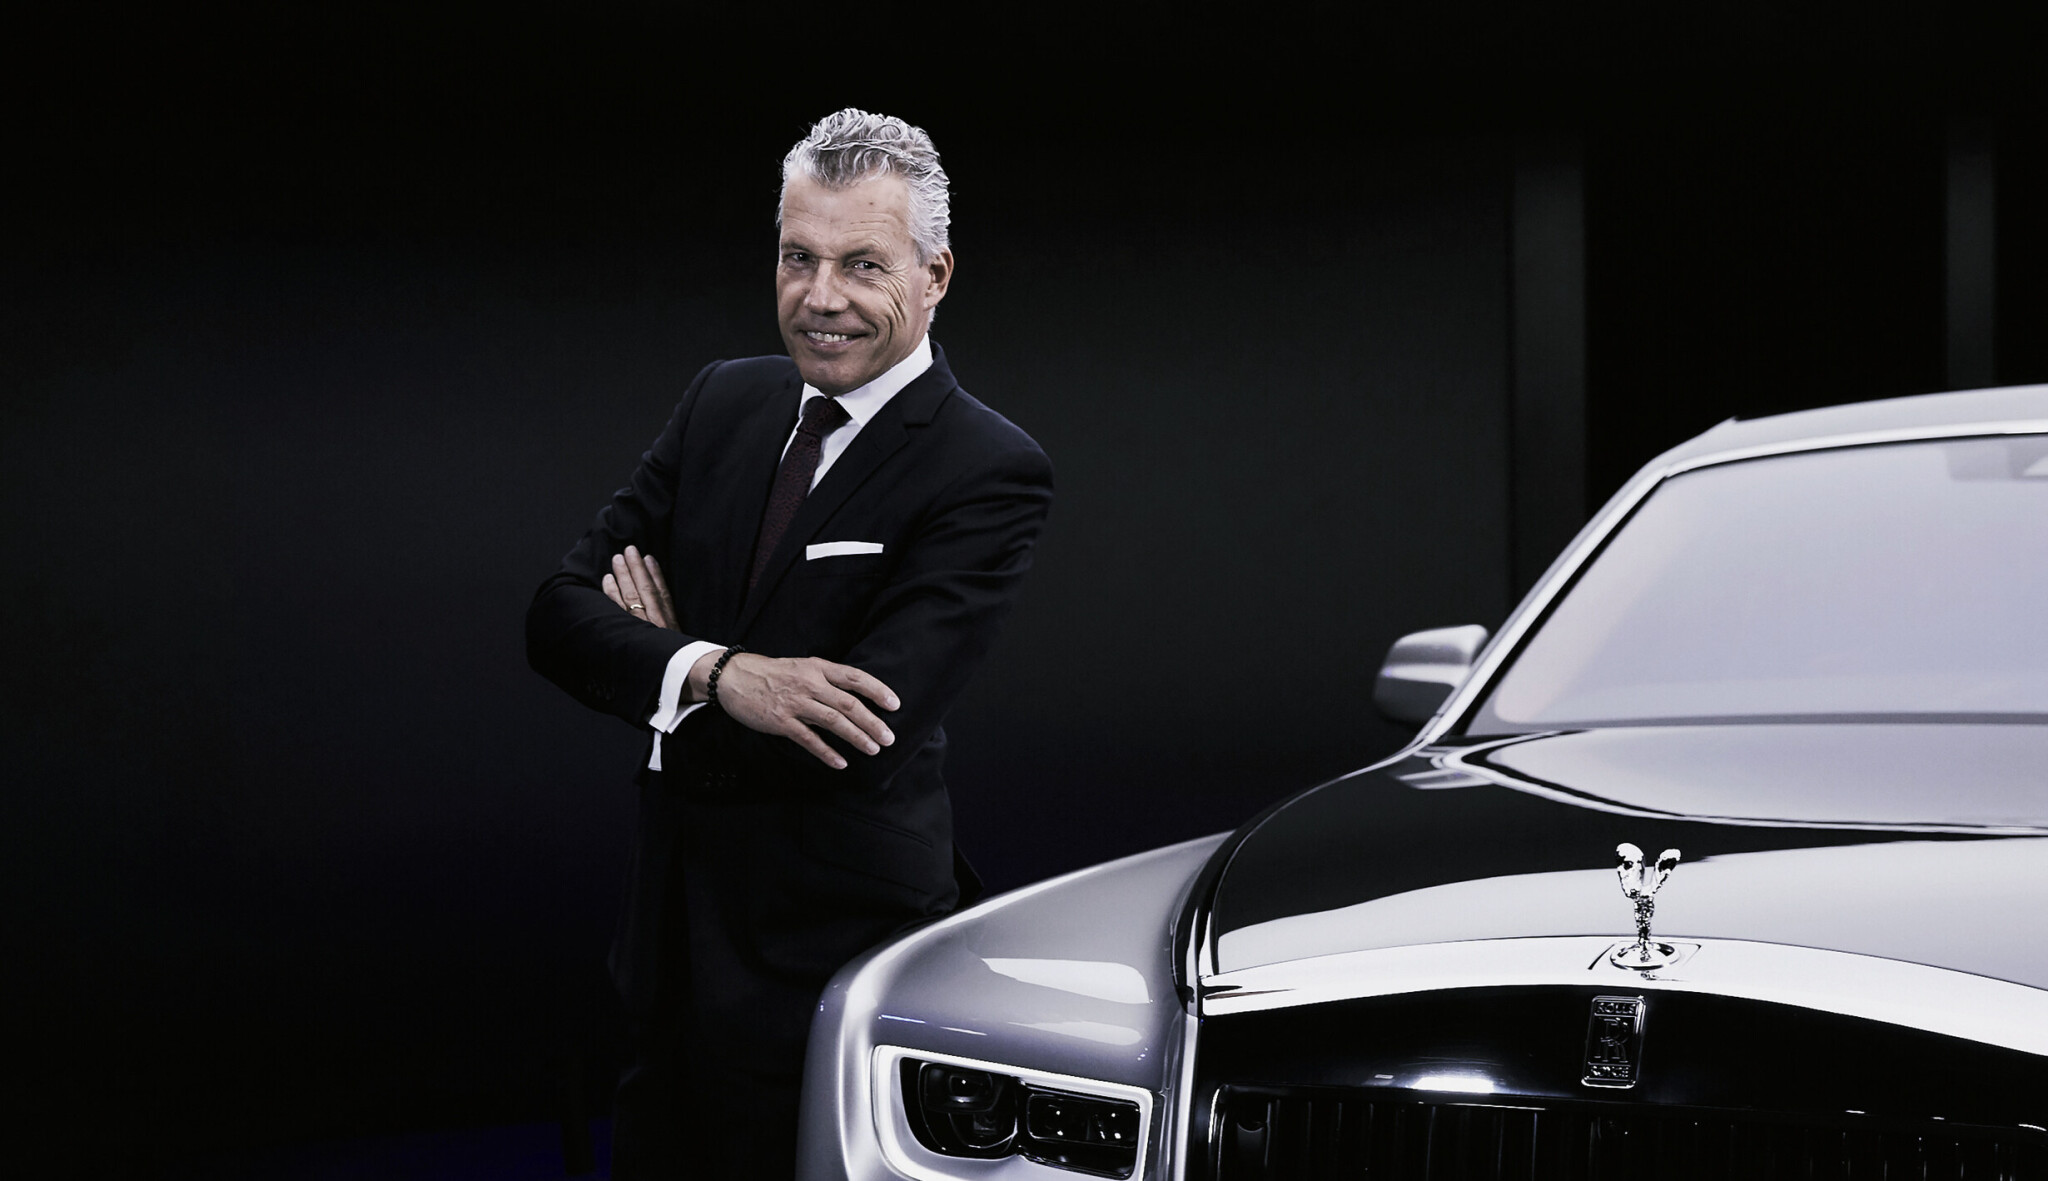 Prodeje zvýšil o 600 procent. Jak přemýšlí šéf Rolls-Royce Torsten Müller-Ötvös?